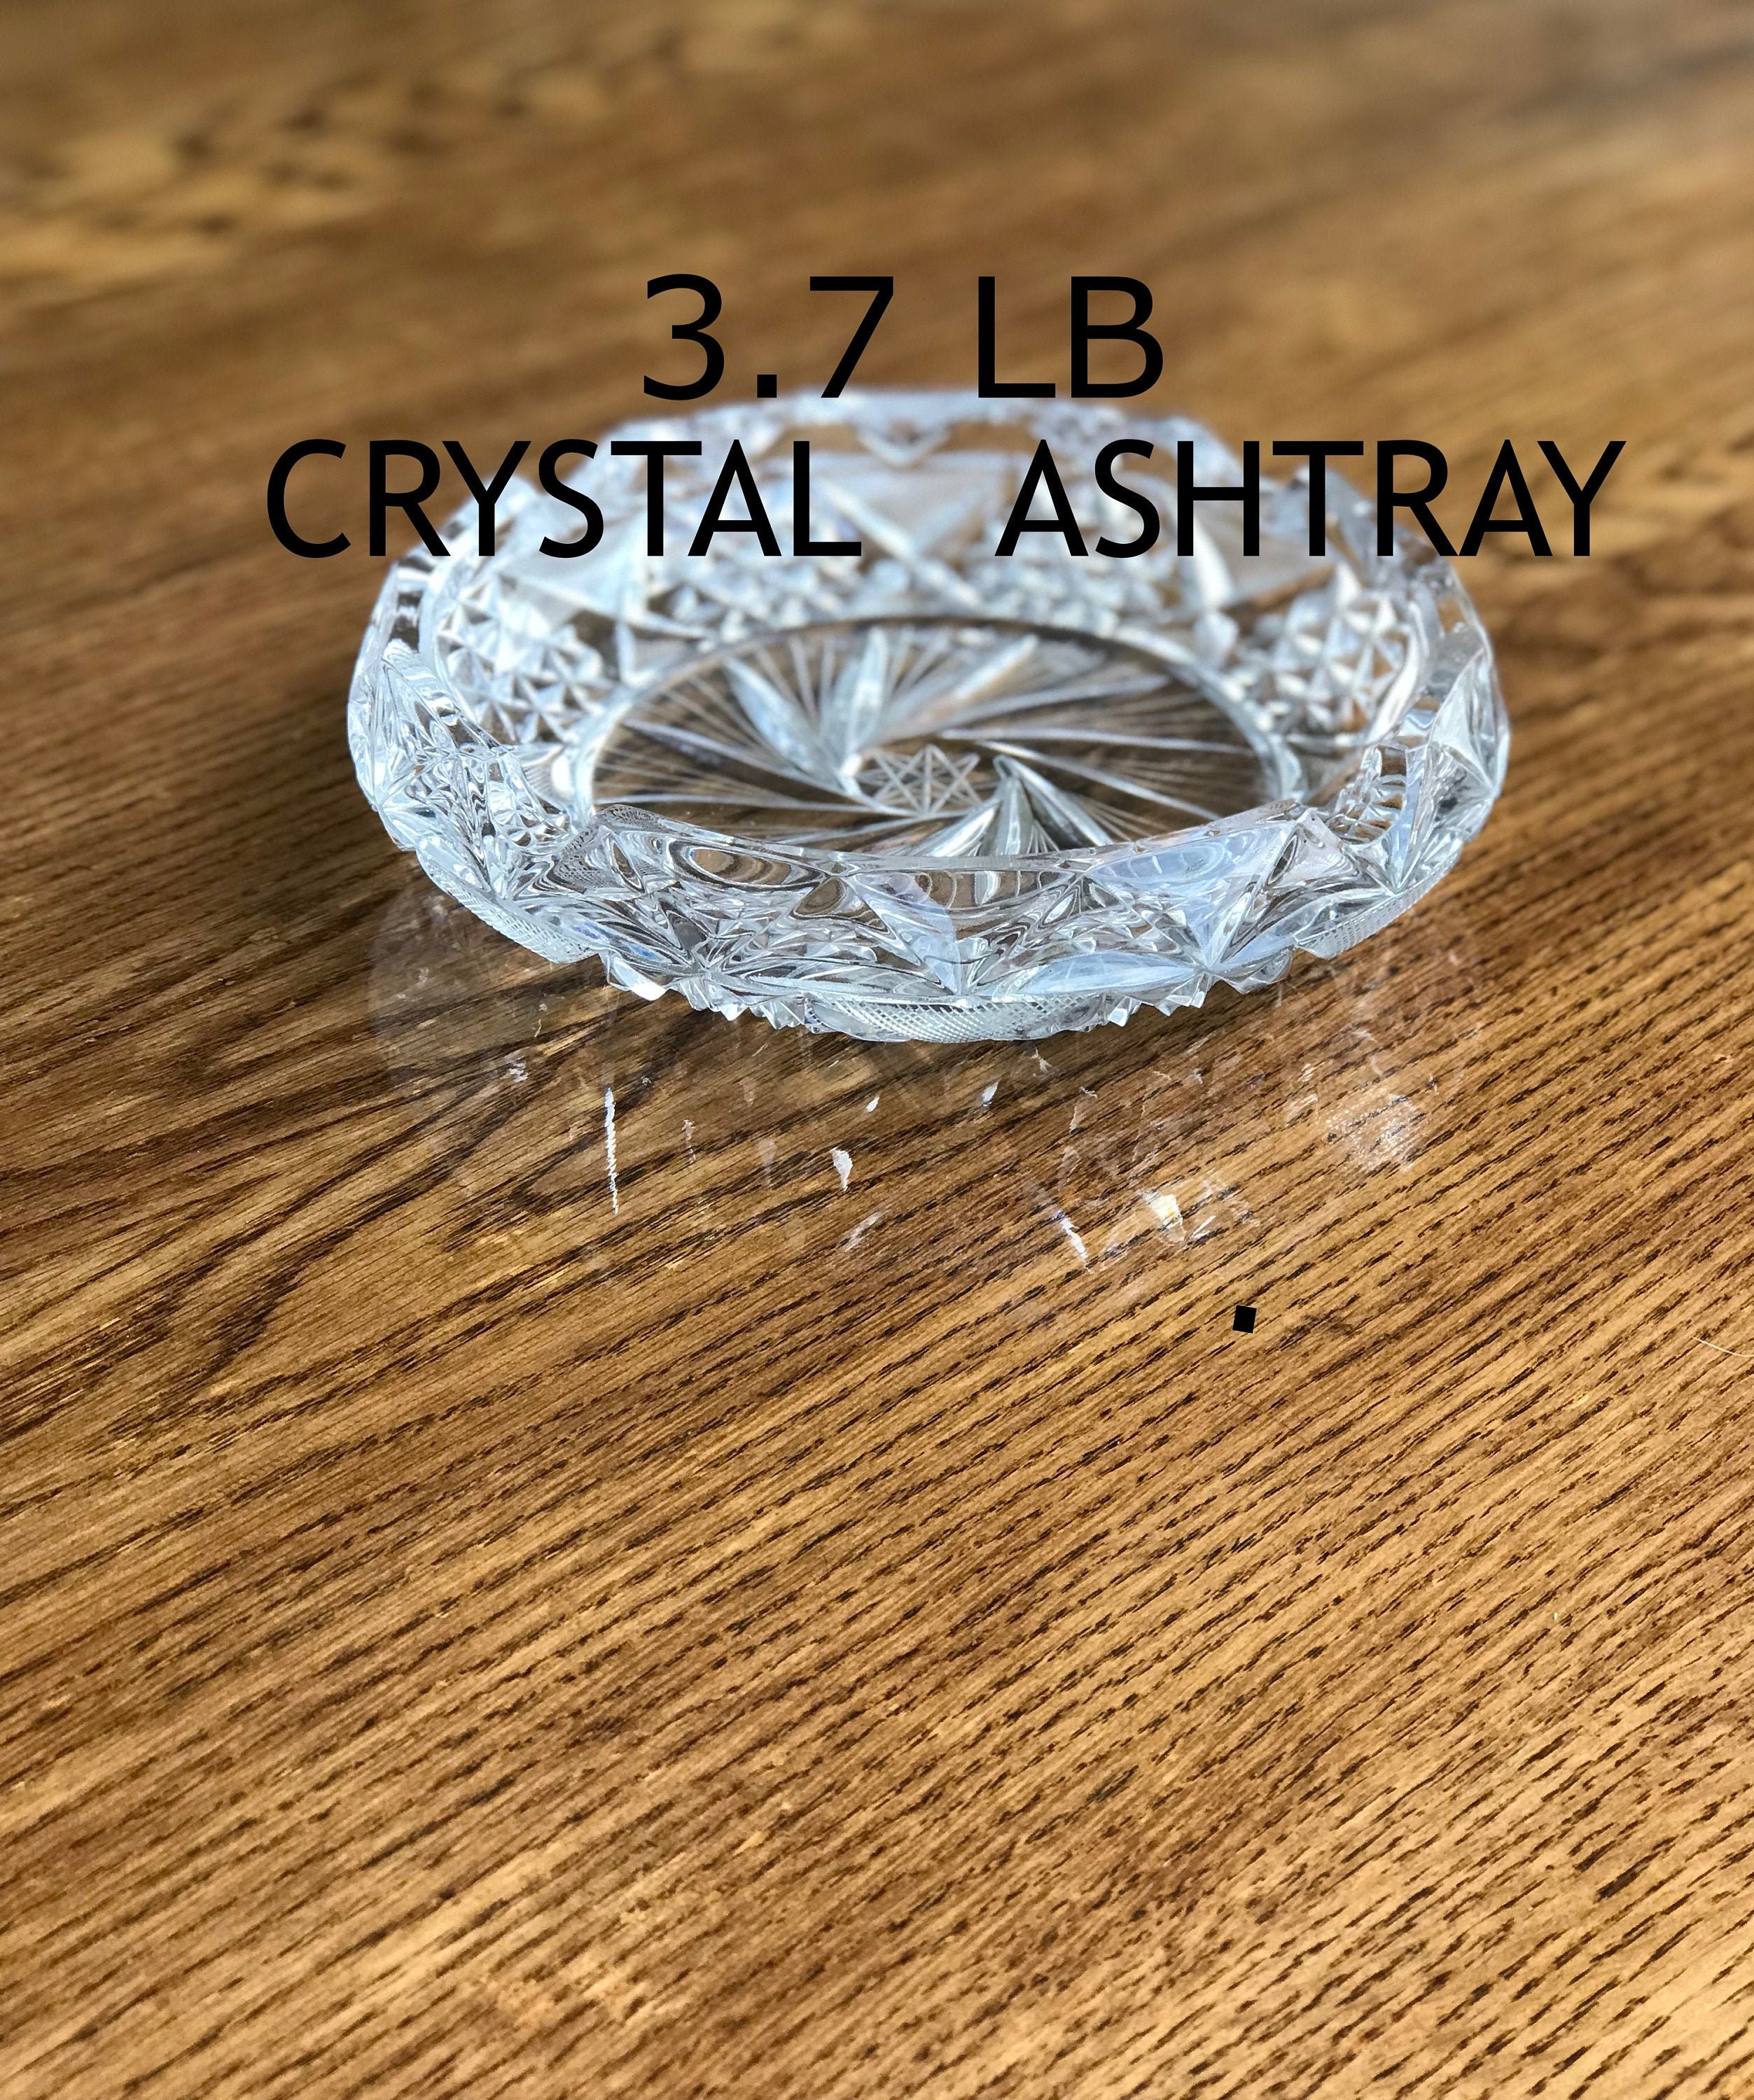 Engraved Large Crystal Ashtray on Finished Wooden Base, Presidente